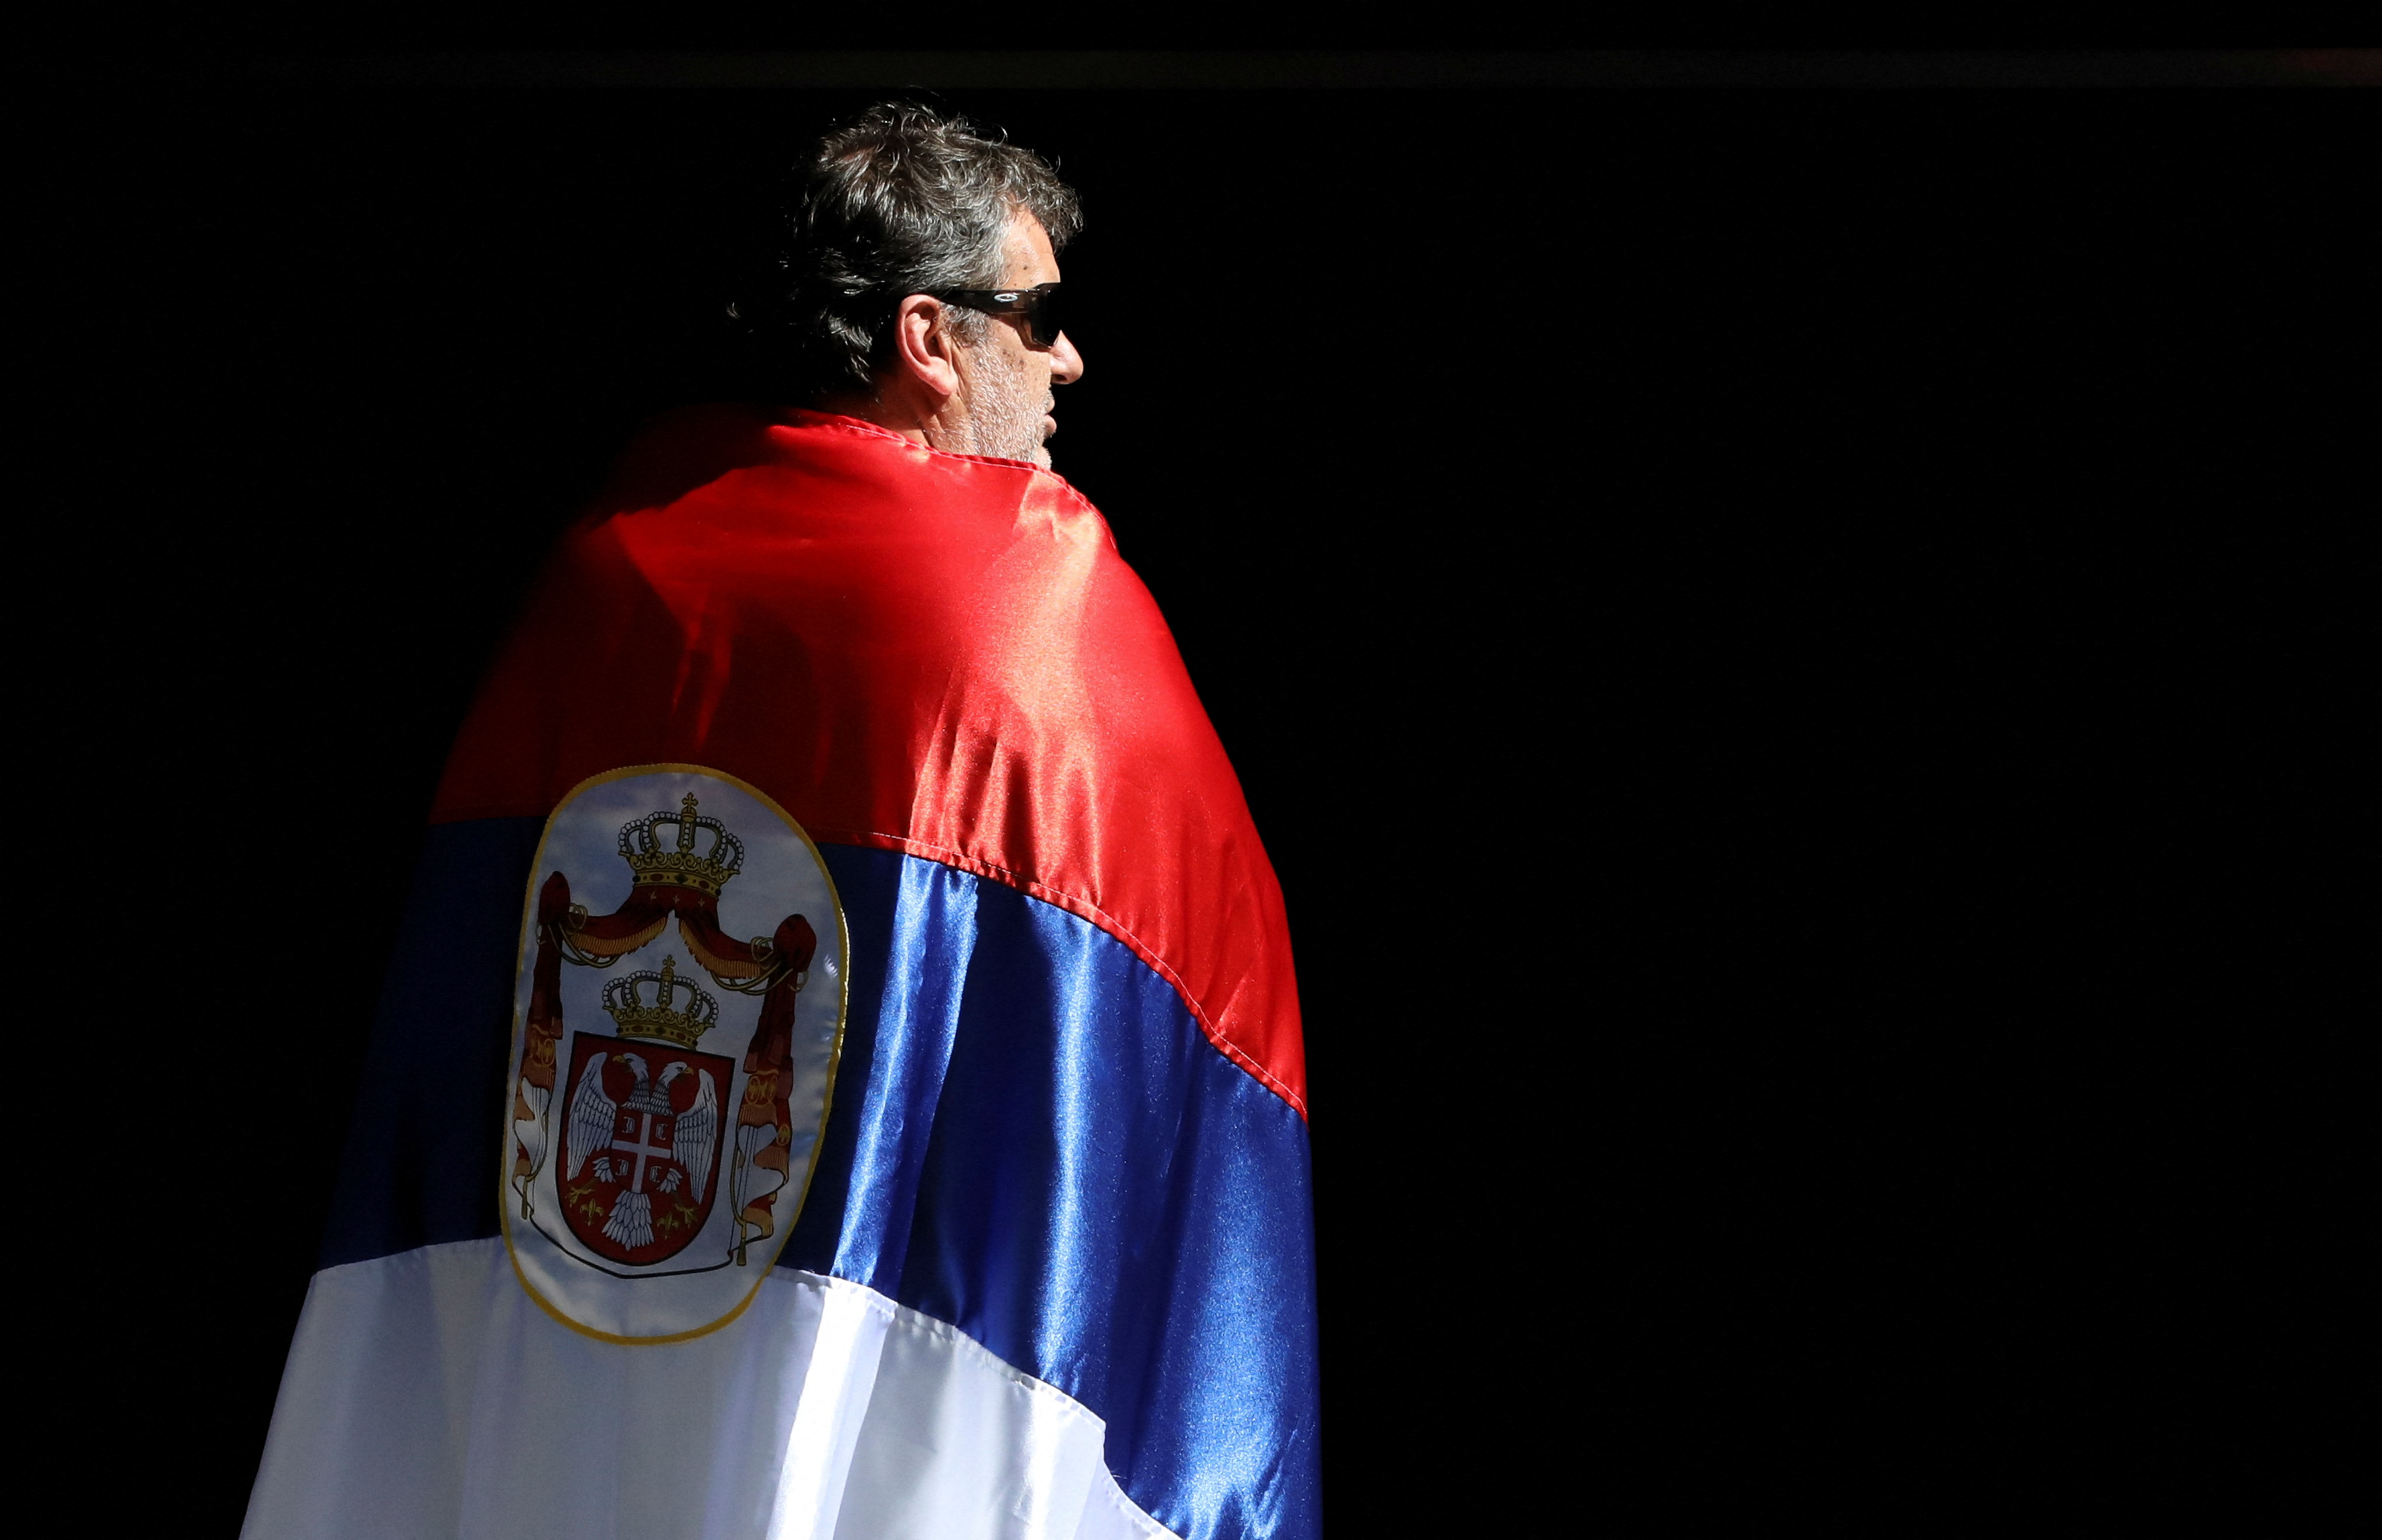 La justicia falló en contra del serbio y sus seguidores no lo podrán ver jugar en Australia (Reuters)